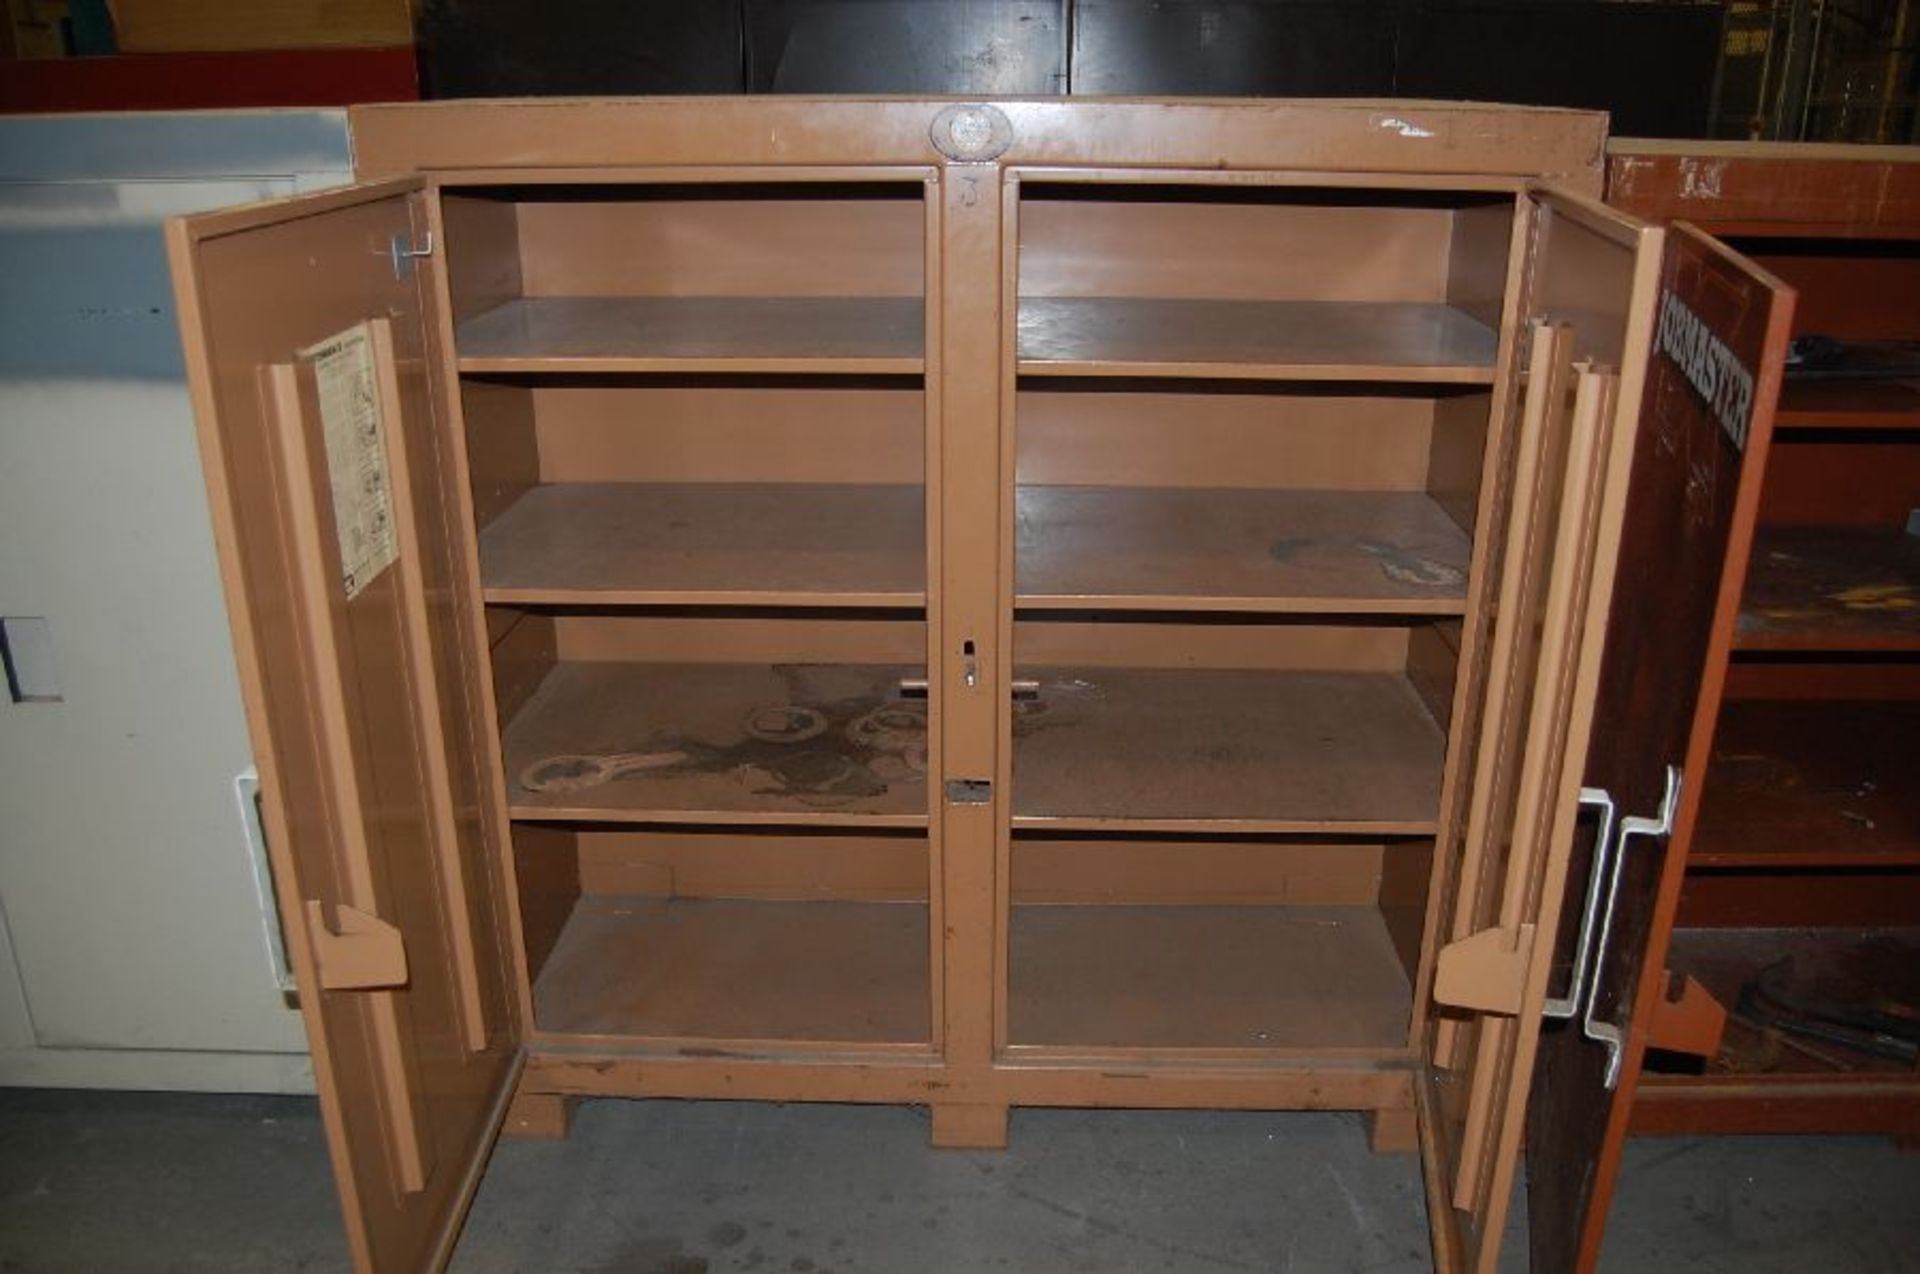 Knaack Model Jobmaster 109 2-Door Storage Cabinet - Image 2 of 4